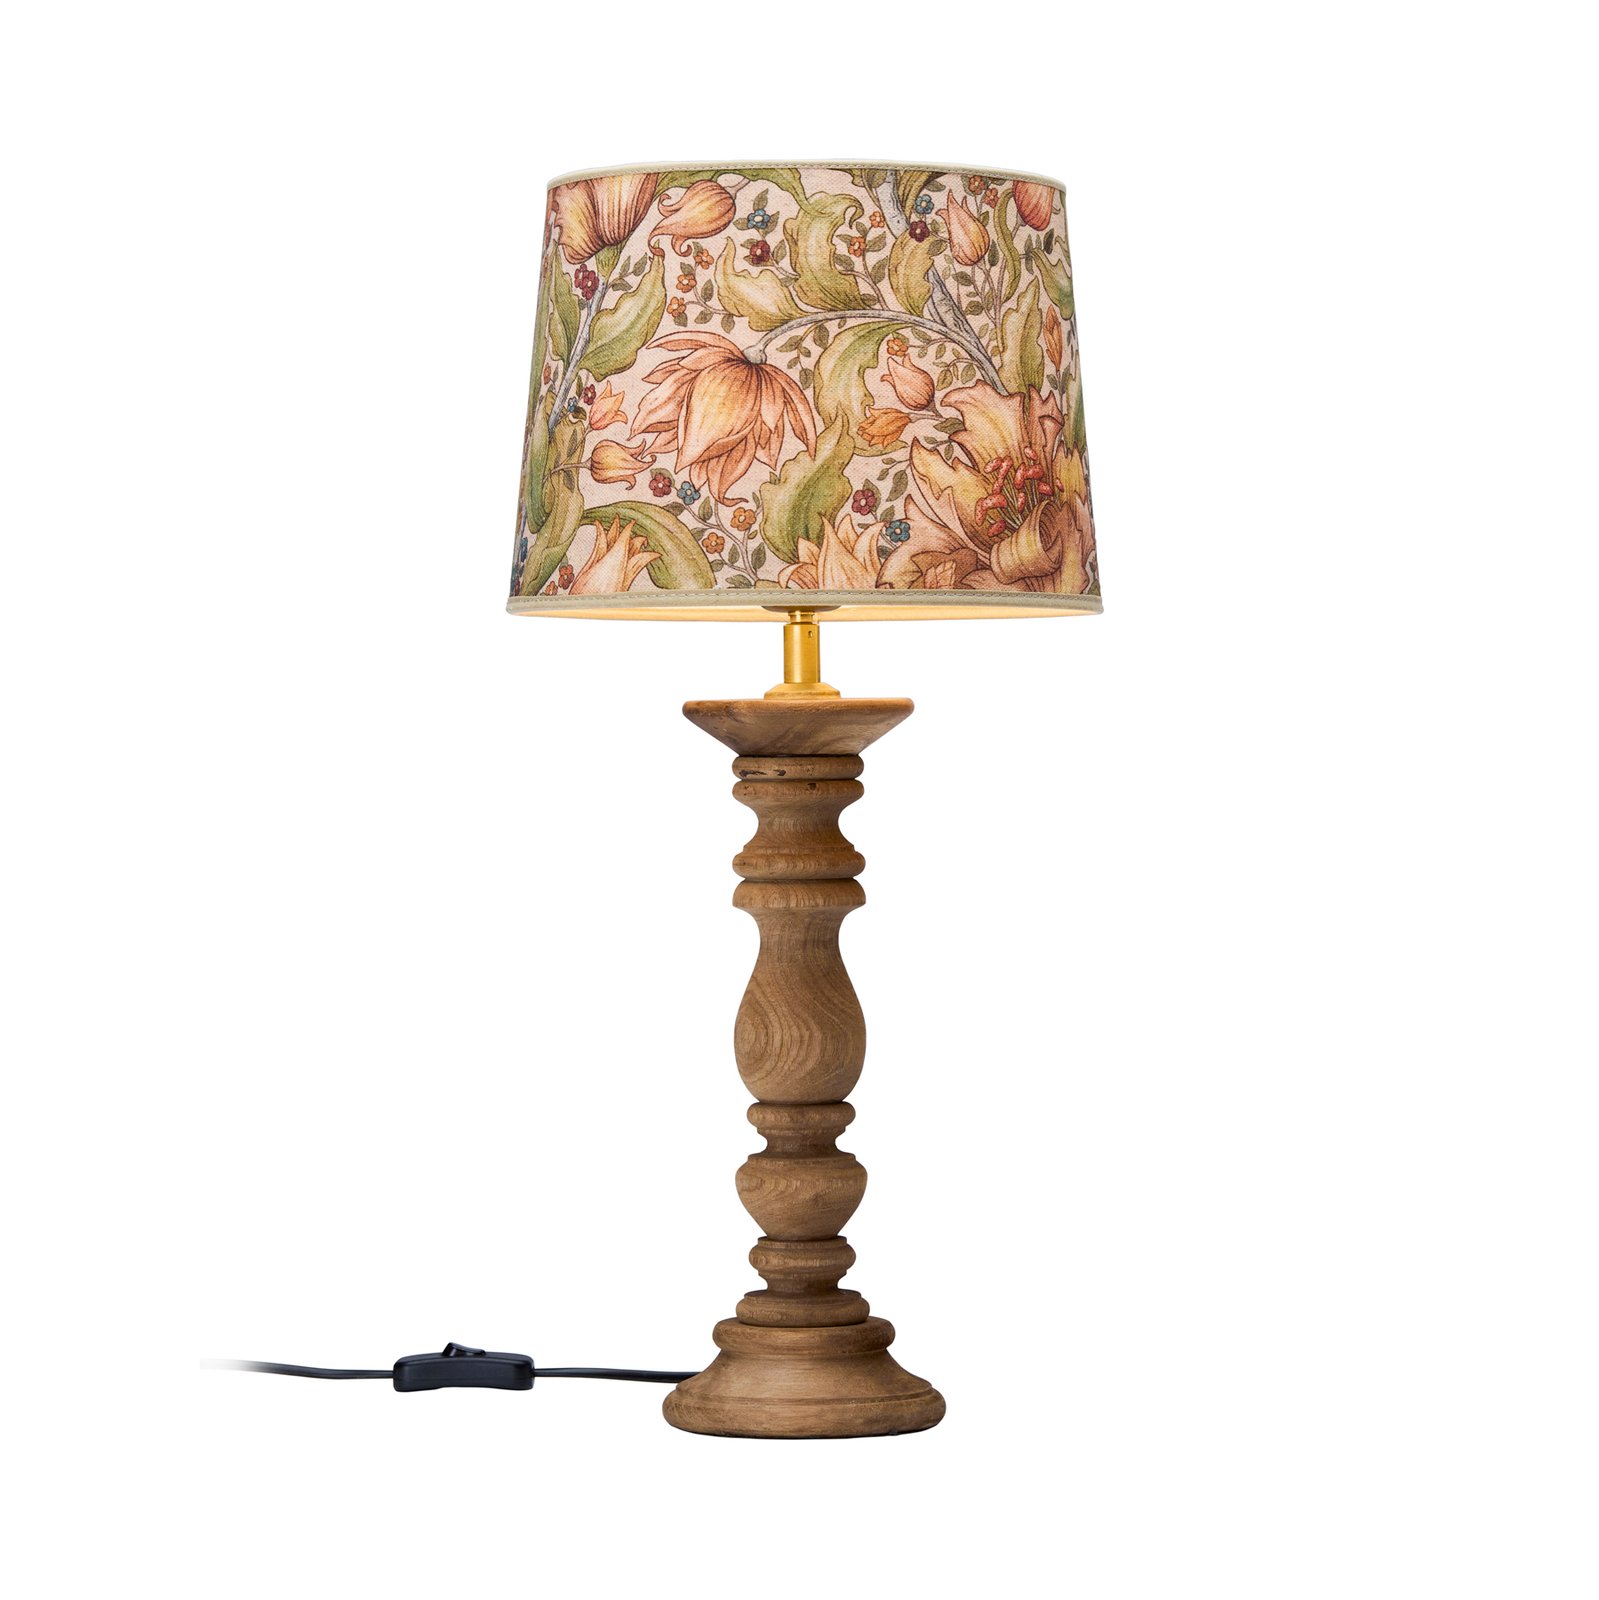 PR Home Lodge stolní lampa dřevo/textil květiny